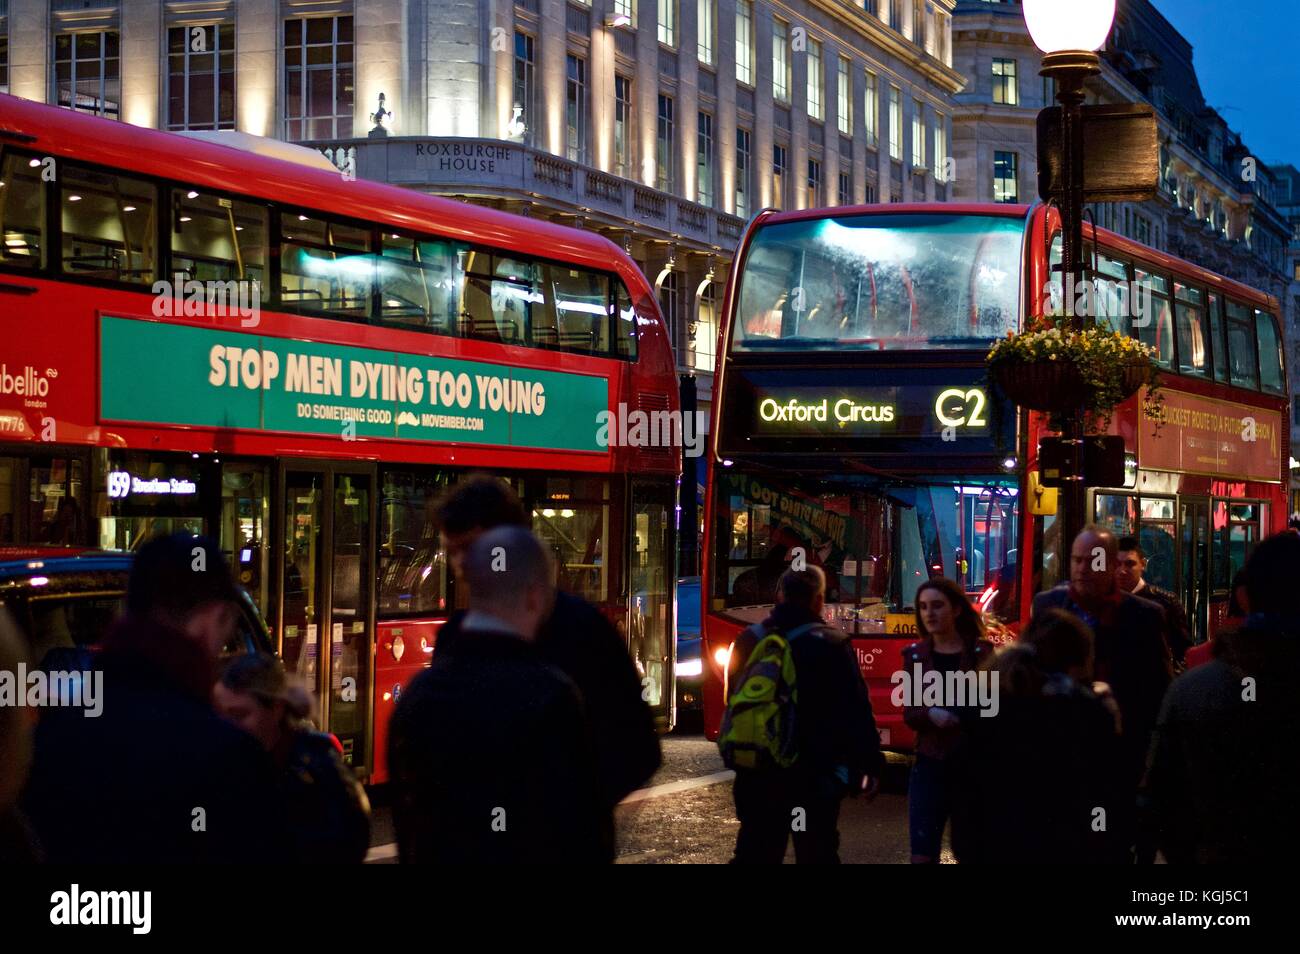 C2 bus jusqu'à Oxford circus derrière un autre bus avec le cancer de prostate annonce, Regent Street, London, UK, 2017 Banque D'Images